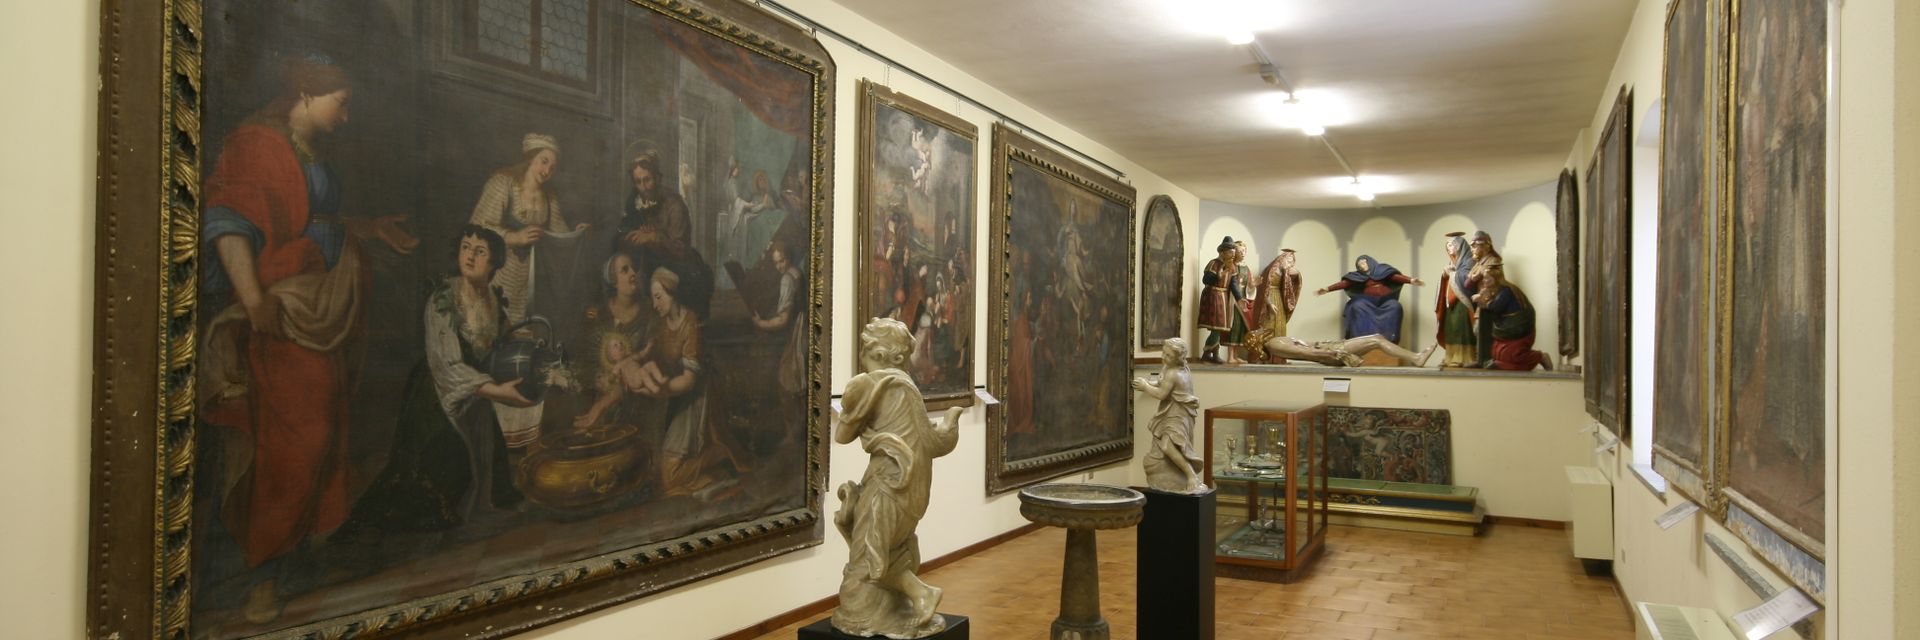 Pfarrmuseum für sakrale Kunst von Ornavasso